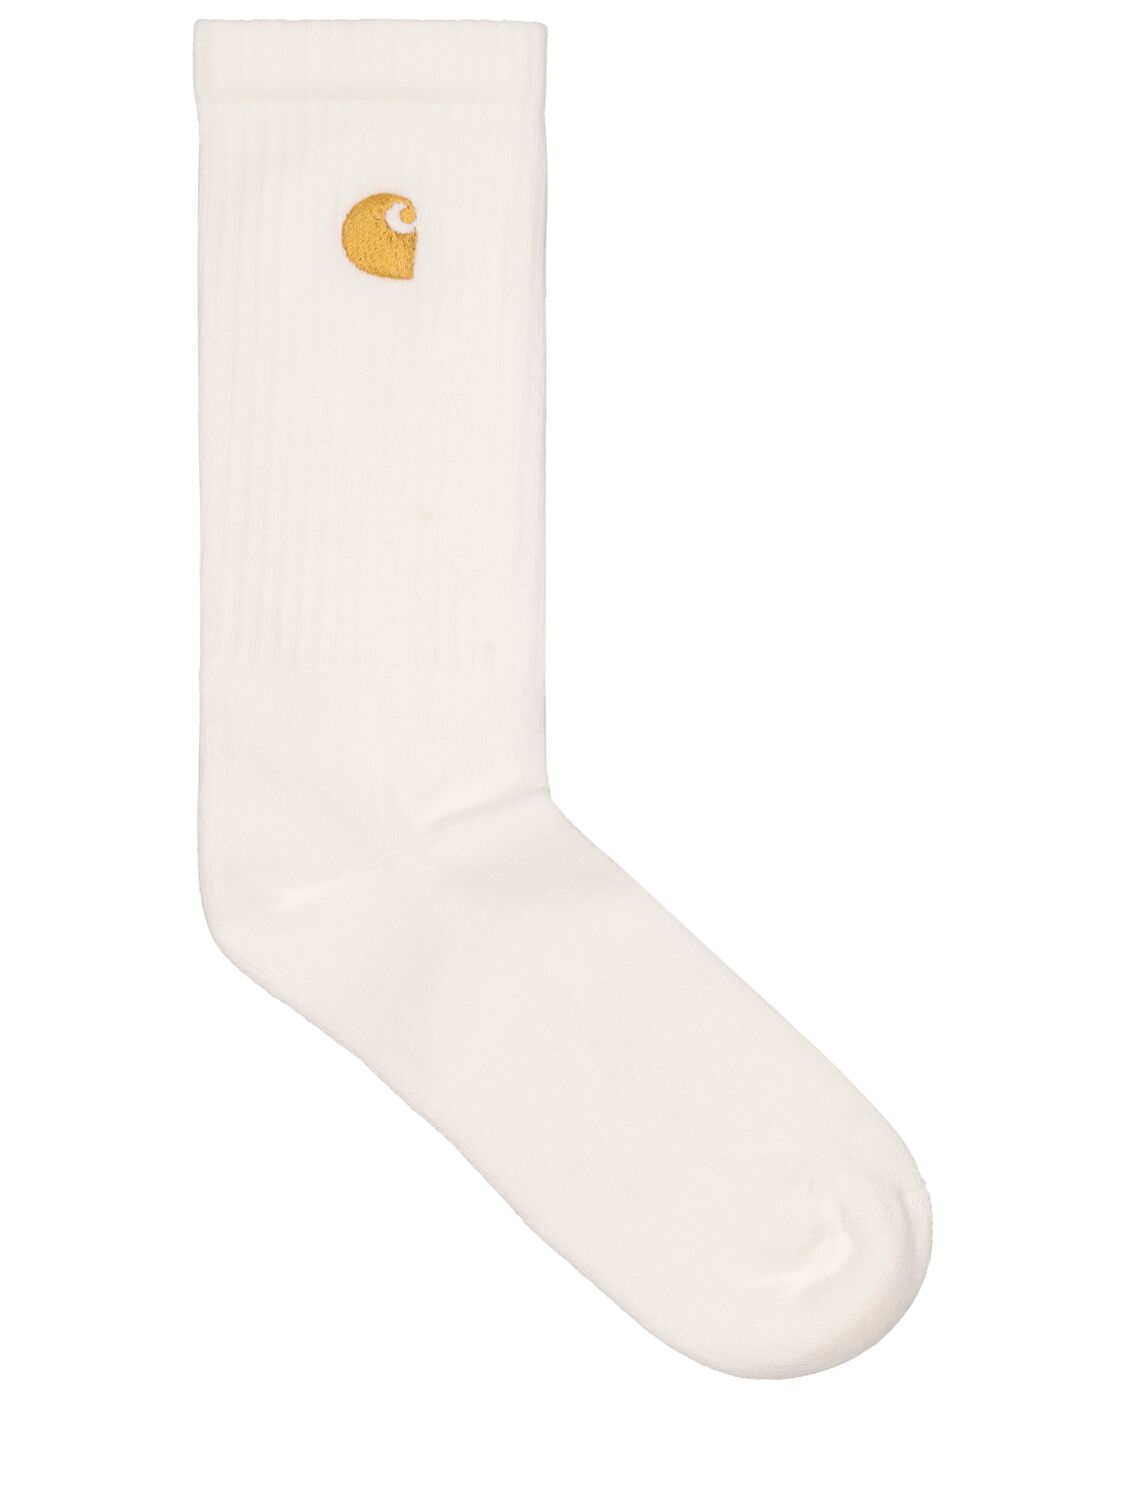 Carhartt Chase Socks In White,gold